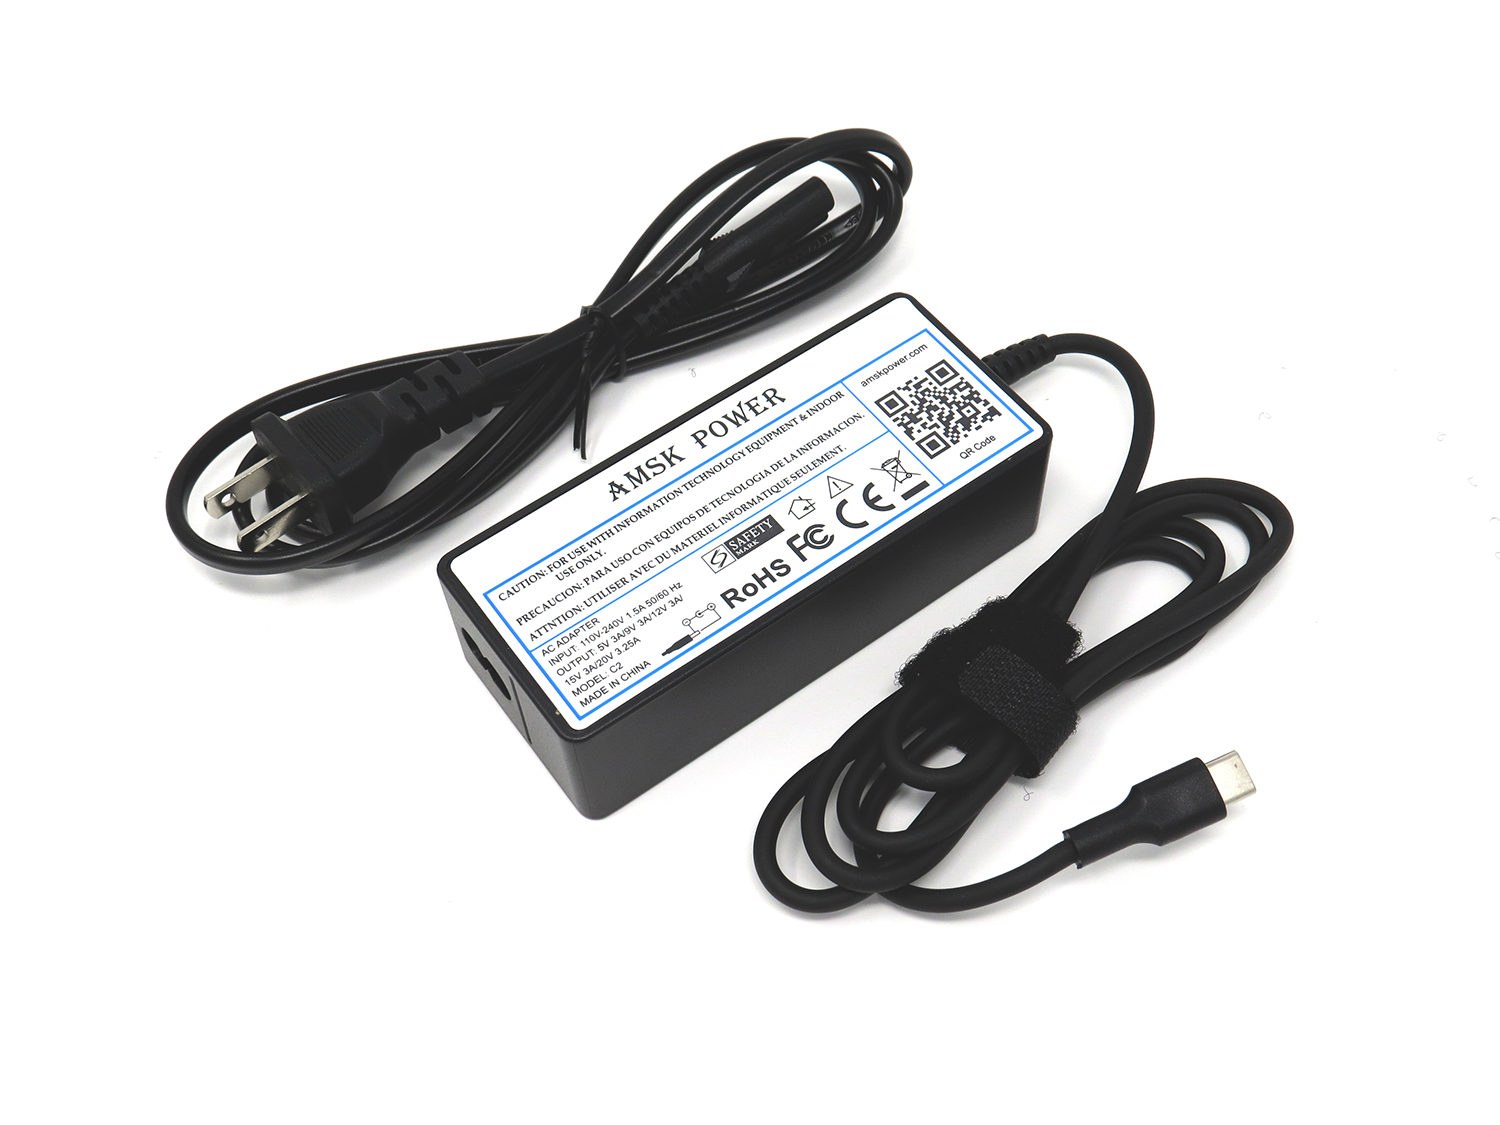 AMSK POWER Ac Adapter For Samsung Chromebook Pro XE510C24 XE510C24-K01US XE510C24-K04US - image 1 of 1